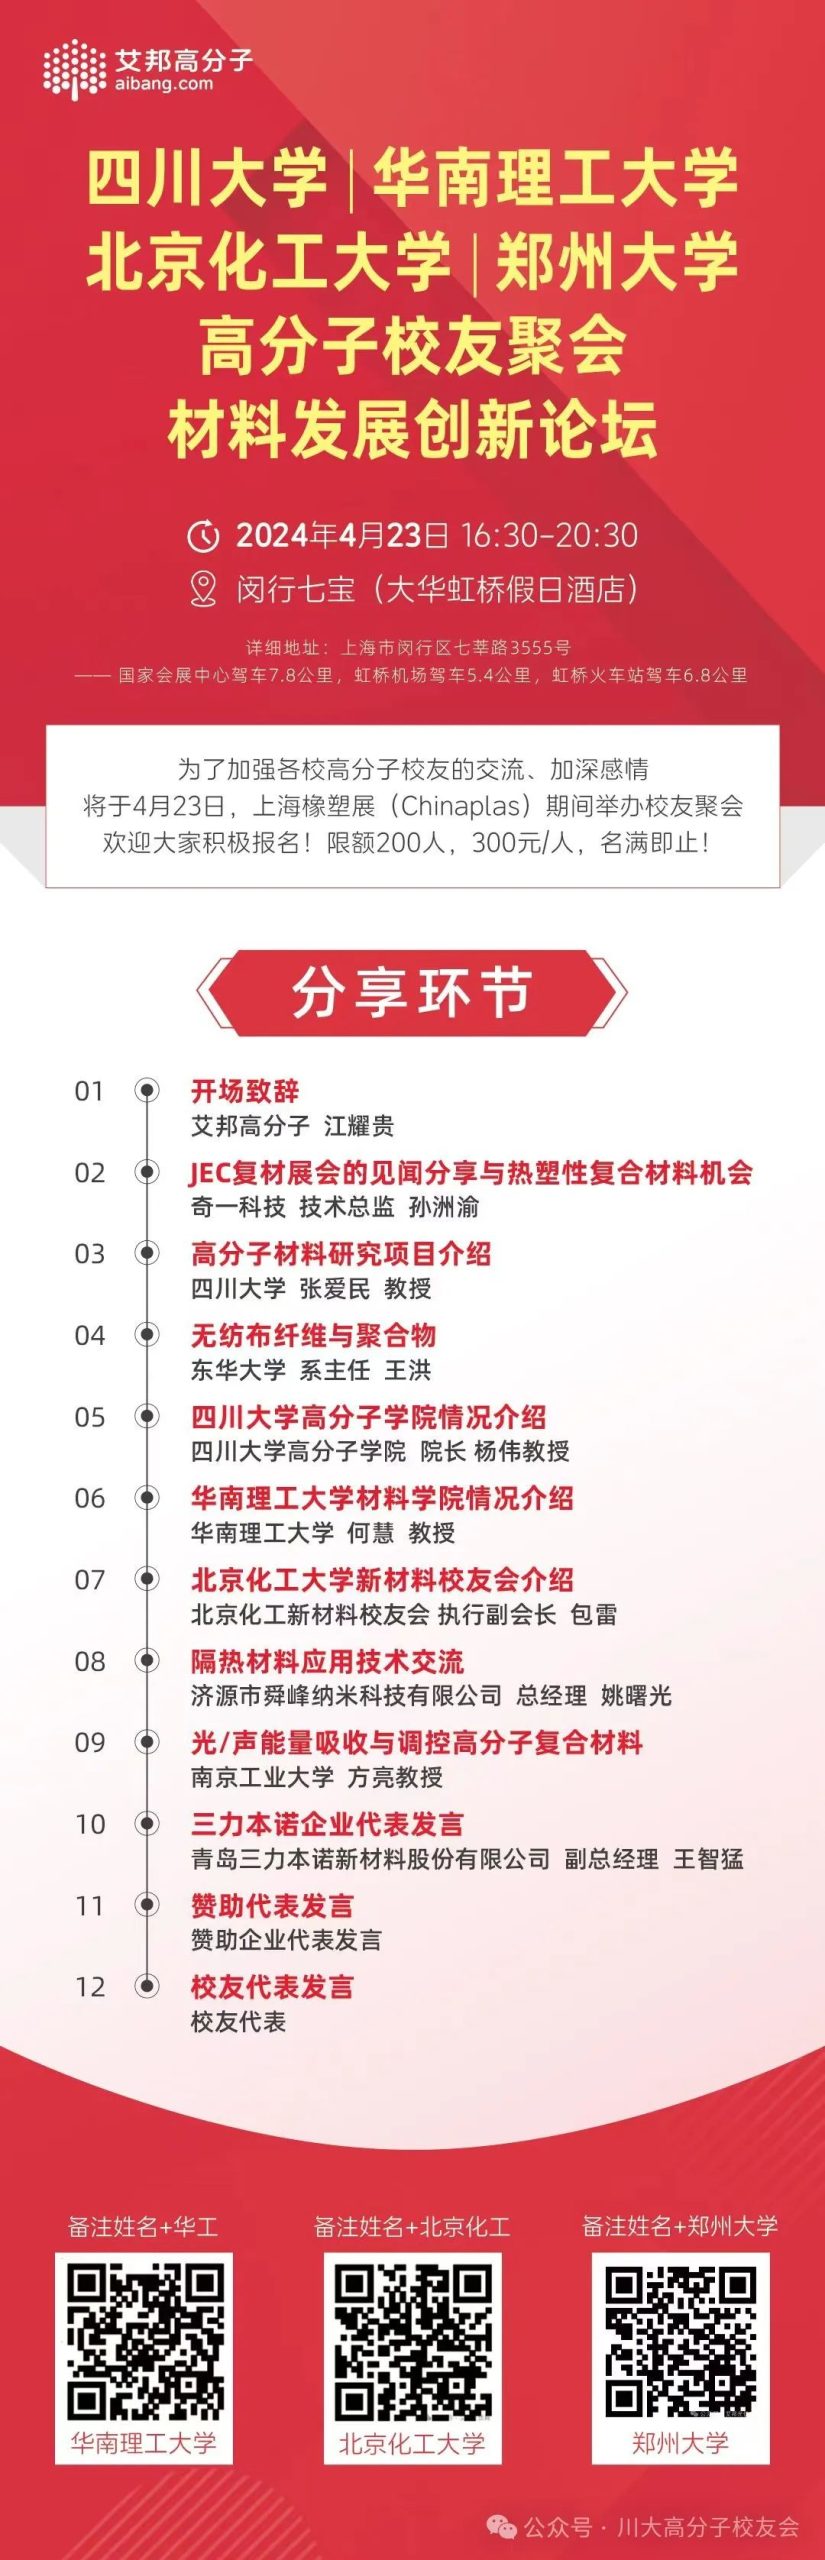 4月23日上海橡塑展期间川大高分子校友聚会最新名单（截止4月17日）